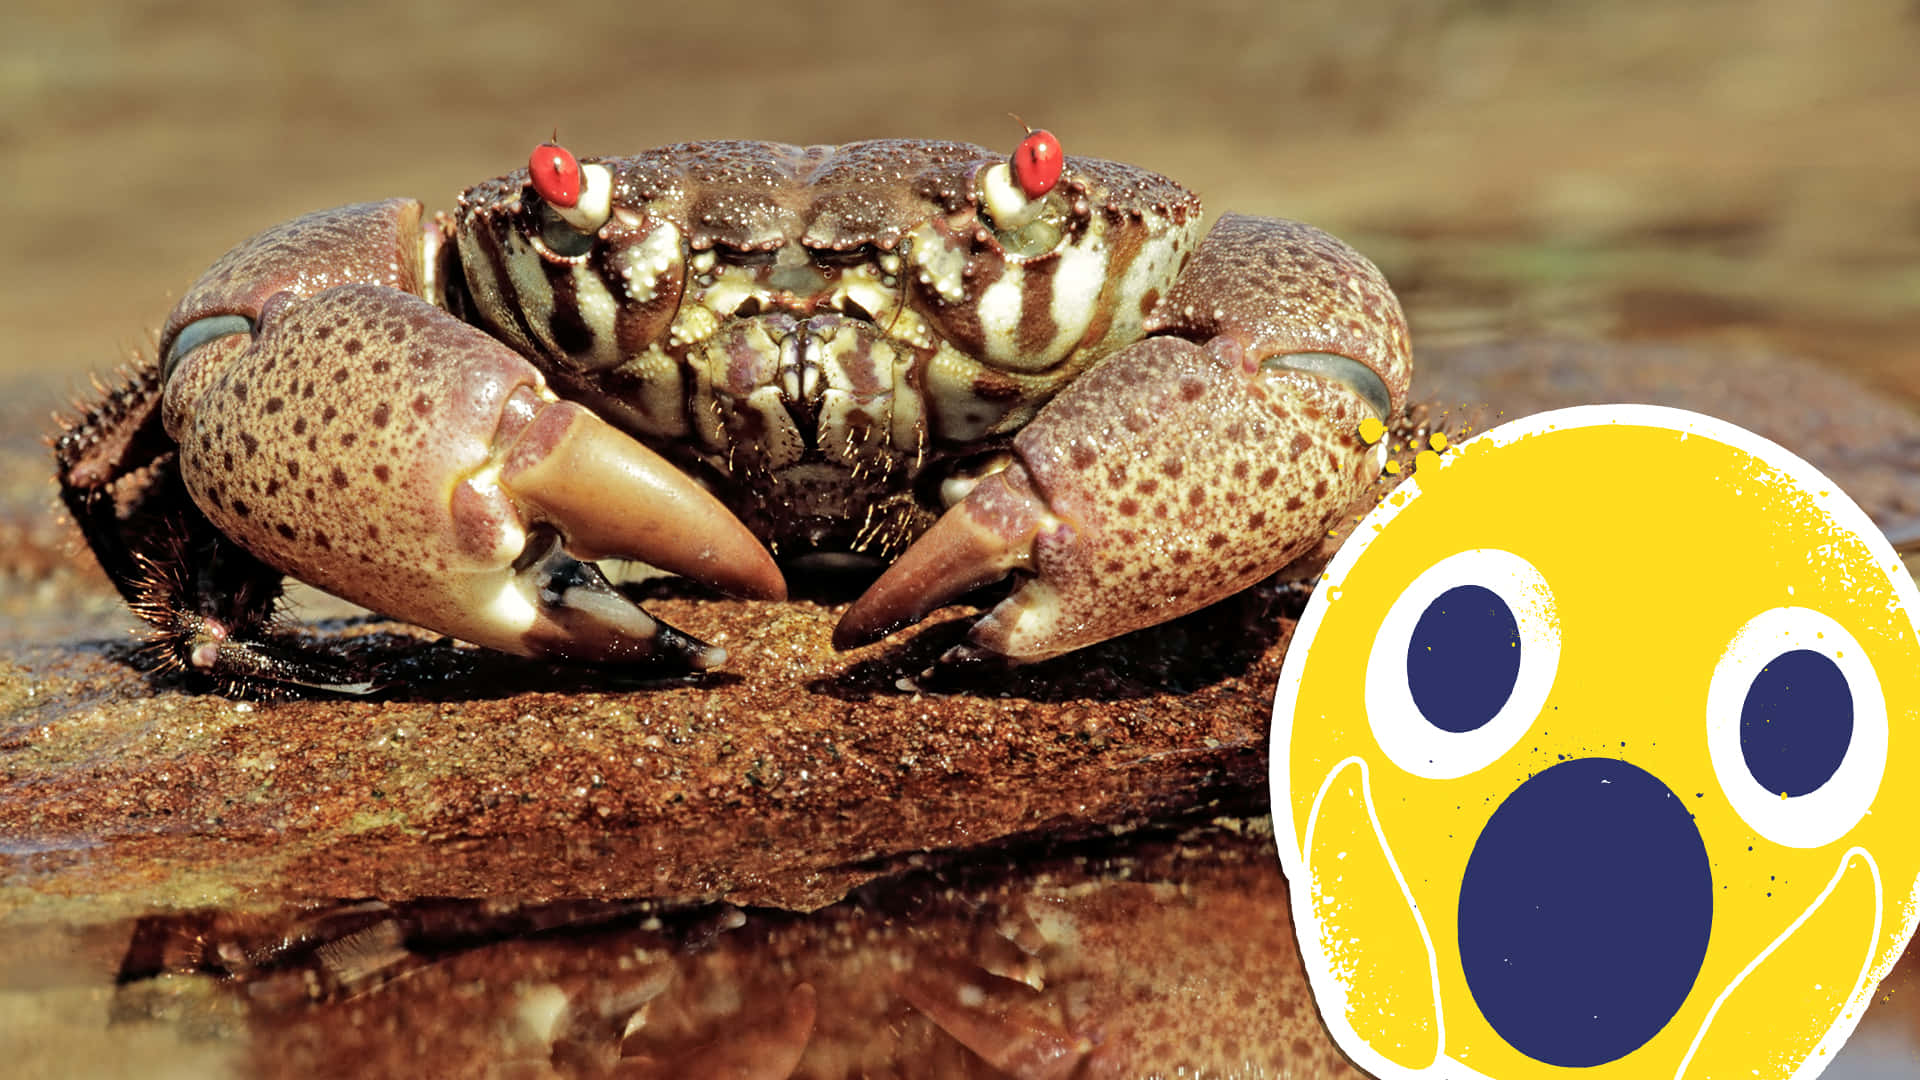 Xanthid Crab On Rock.jpg Wallpaper